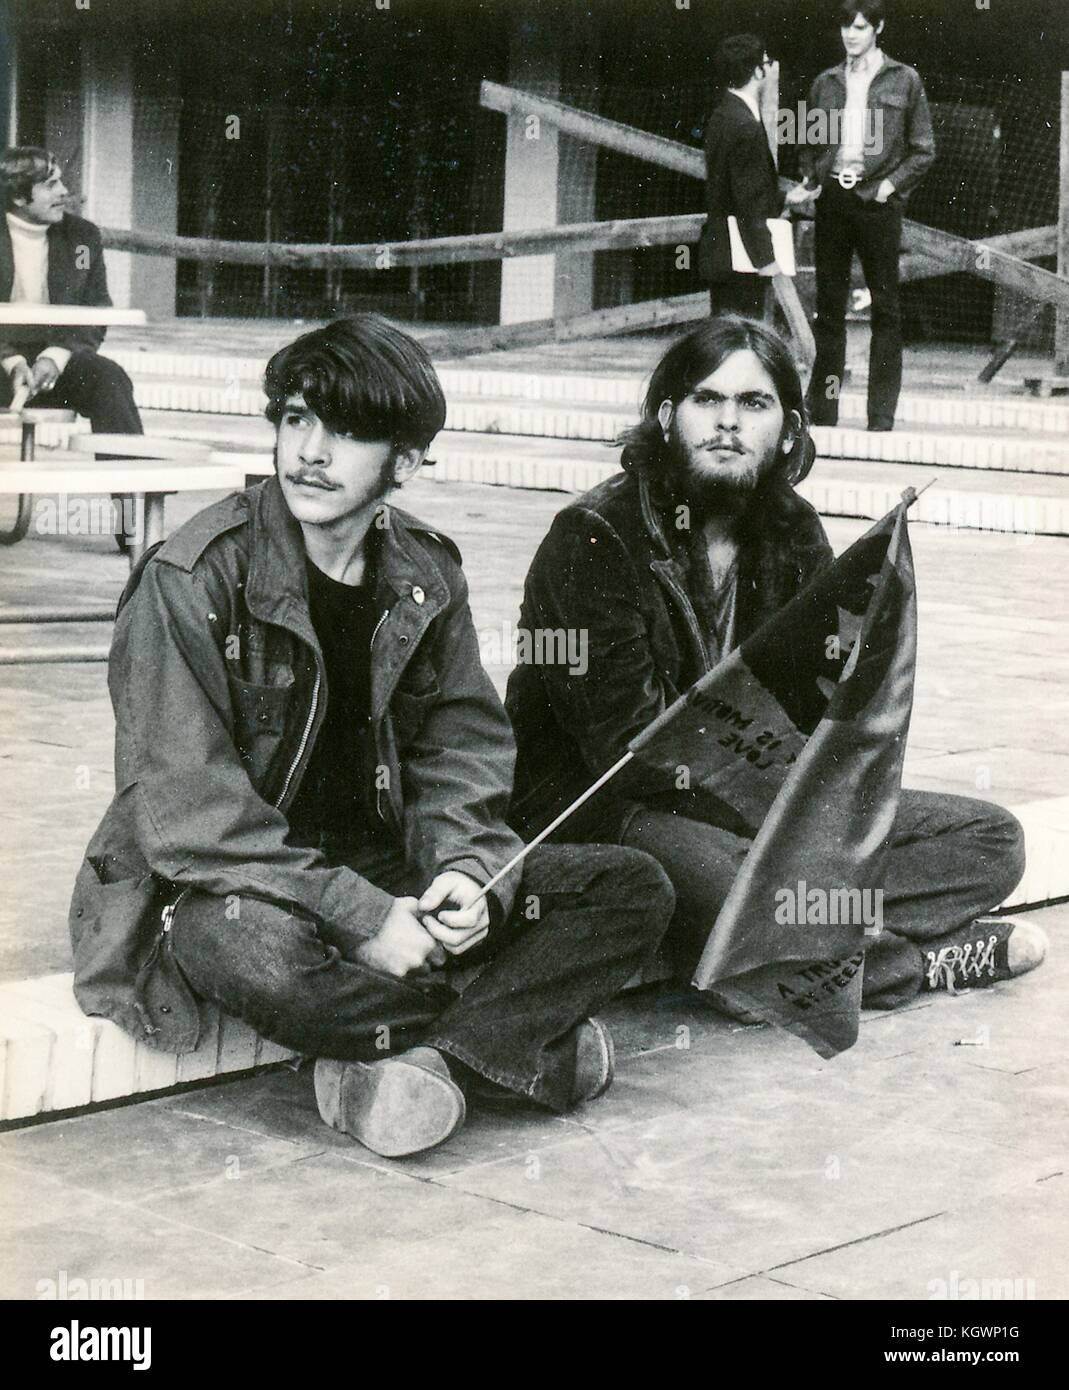 Zwei männliche Studenten tragen hippie Kleidung auf einem Schritt sitzen, mit einem Betrieb eine Fahne mit dem Gesicht von Revolutionär Che Guevara, während ein anti Vietnam Krieg Schüler sitzen - aus Protest an der North Carolina State University, Raleigh, North Carolina, 1970. () Stockfoto